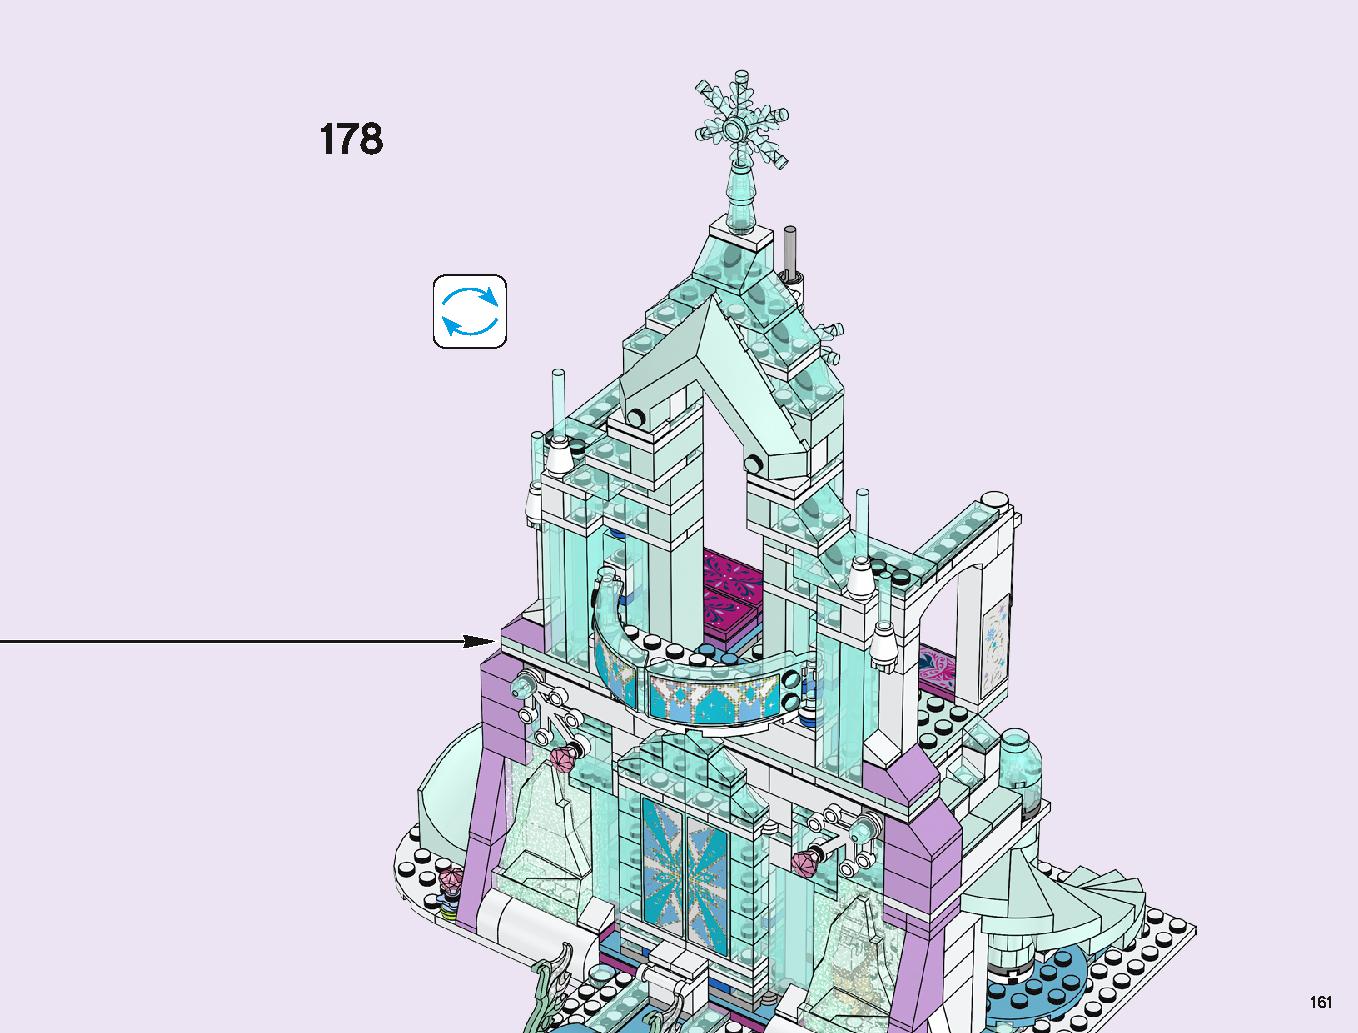 アナと雪の女王 “アイスキャッスル・ファンタジー” 43172 レゴの商品情報 レゴの説明書・組立方法 161 page